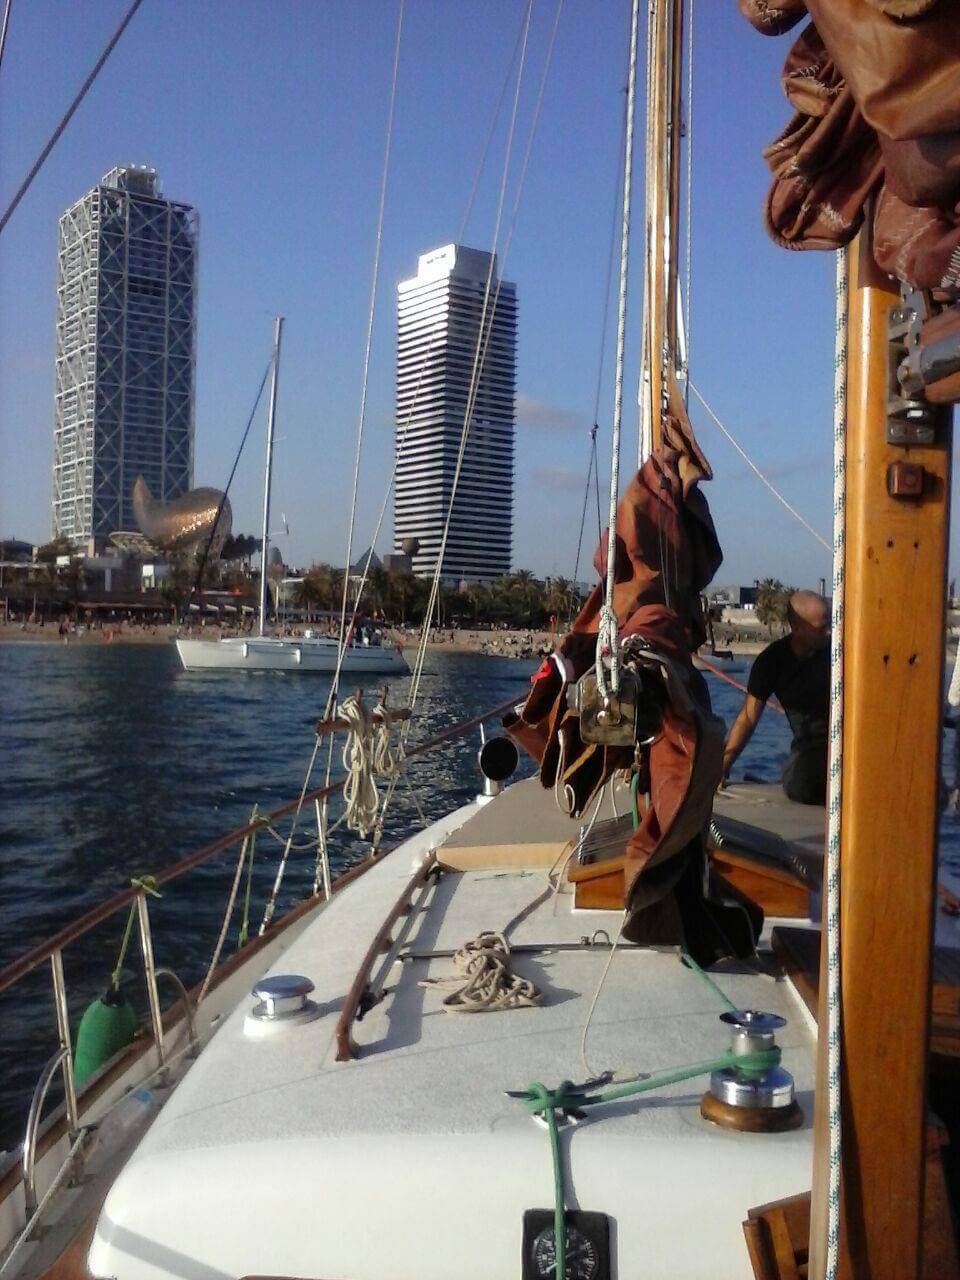 Vaixell pirata a Barcelona, excursions i festes infantils amb vaixell pirata